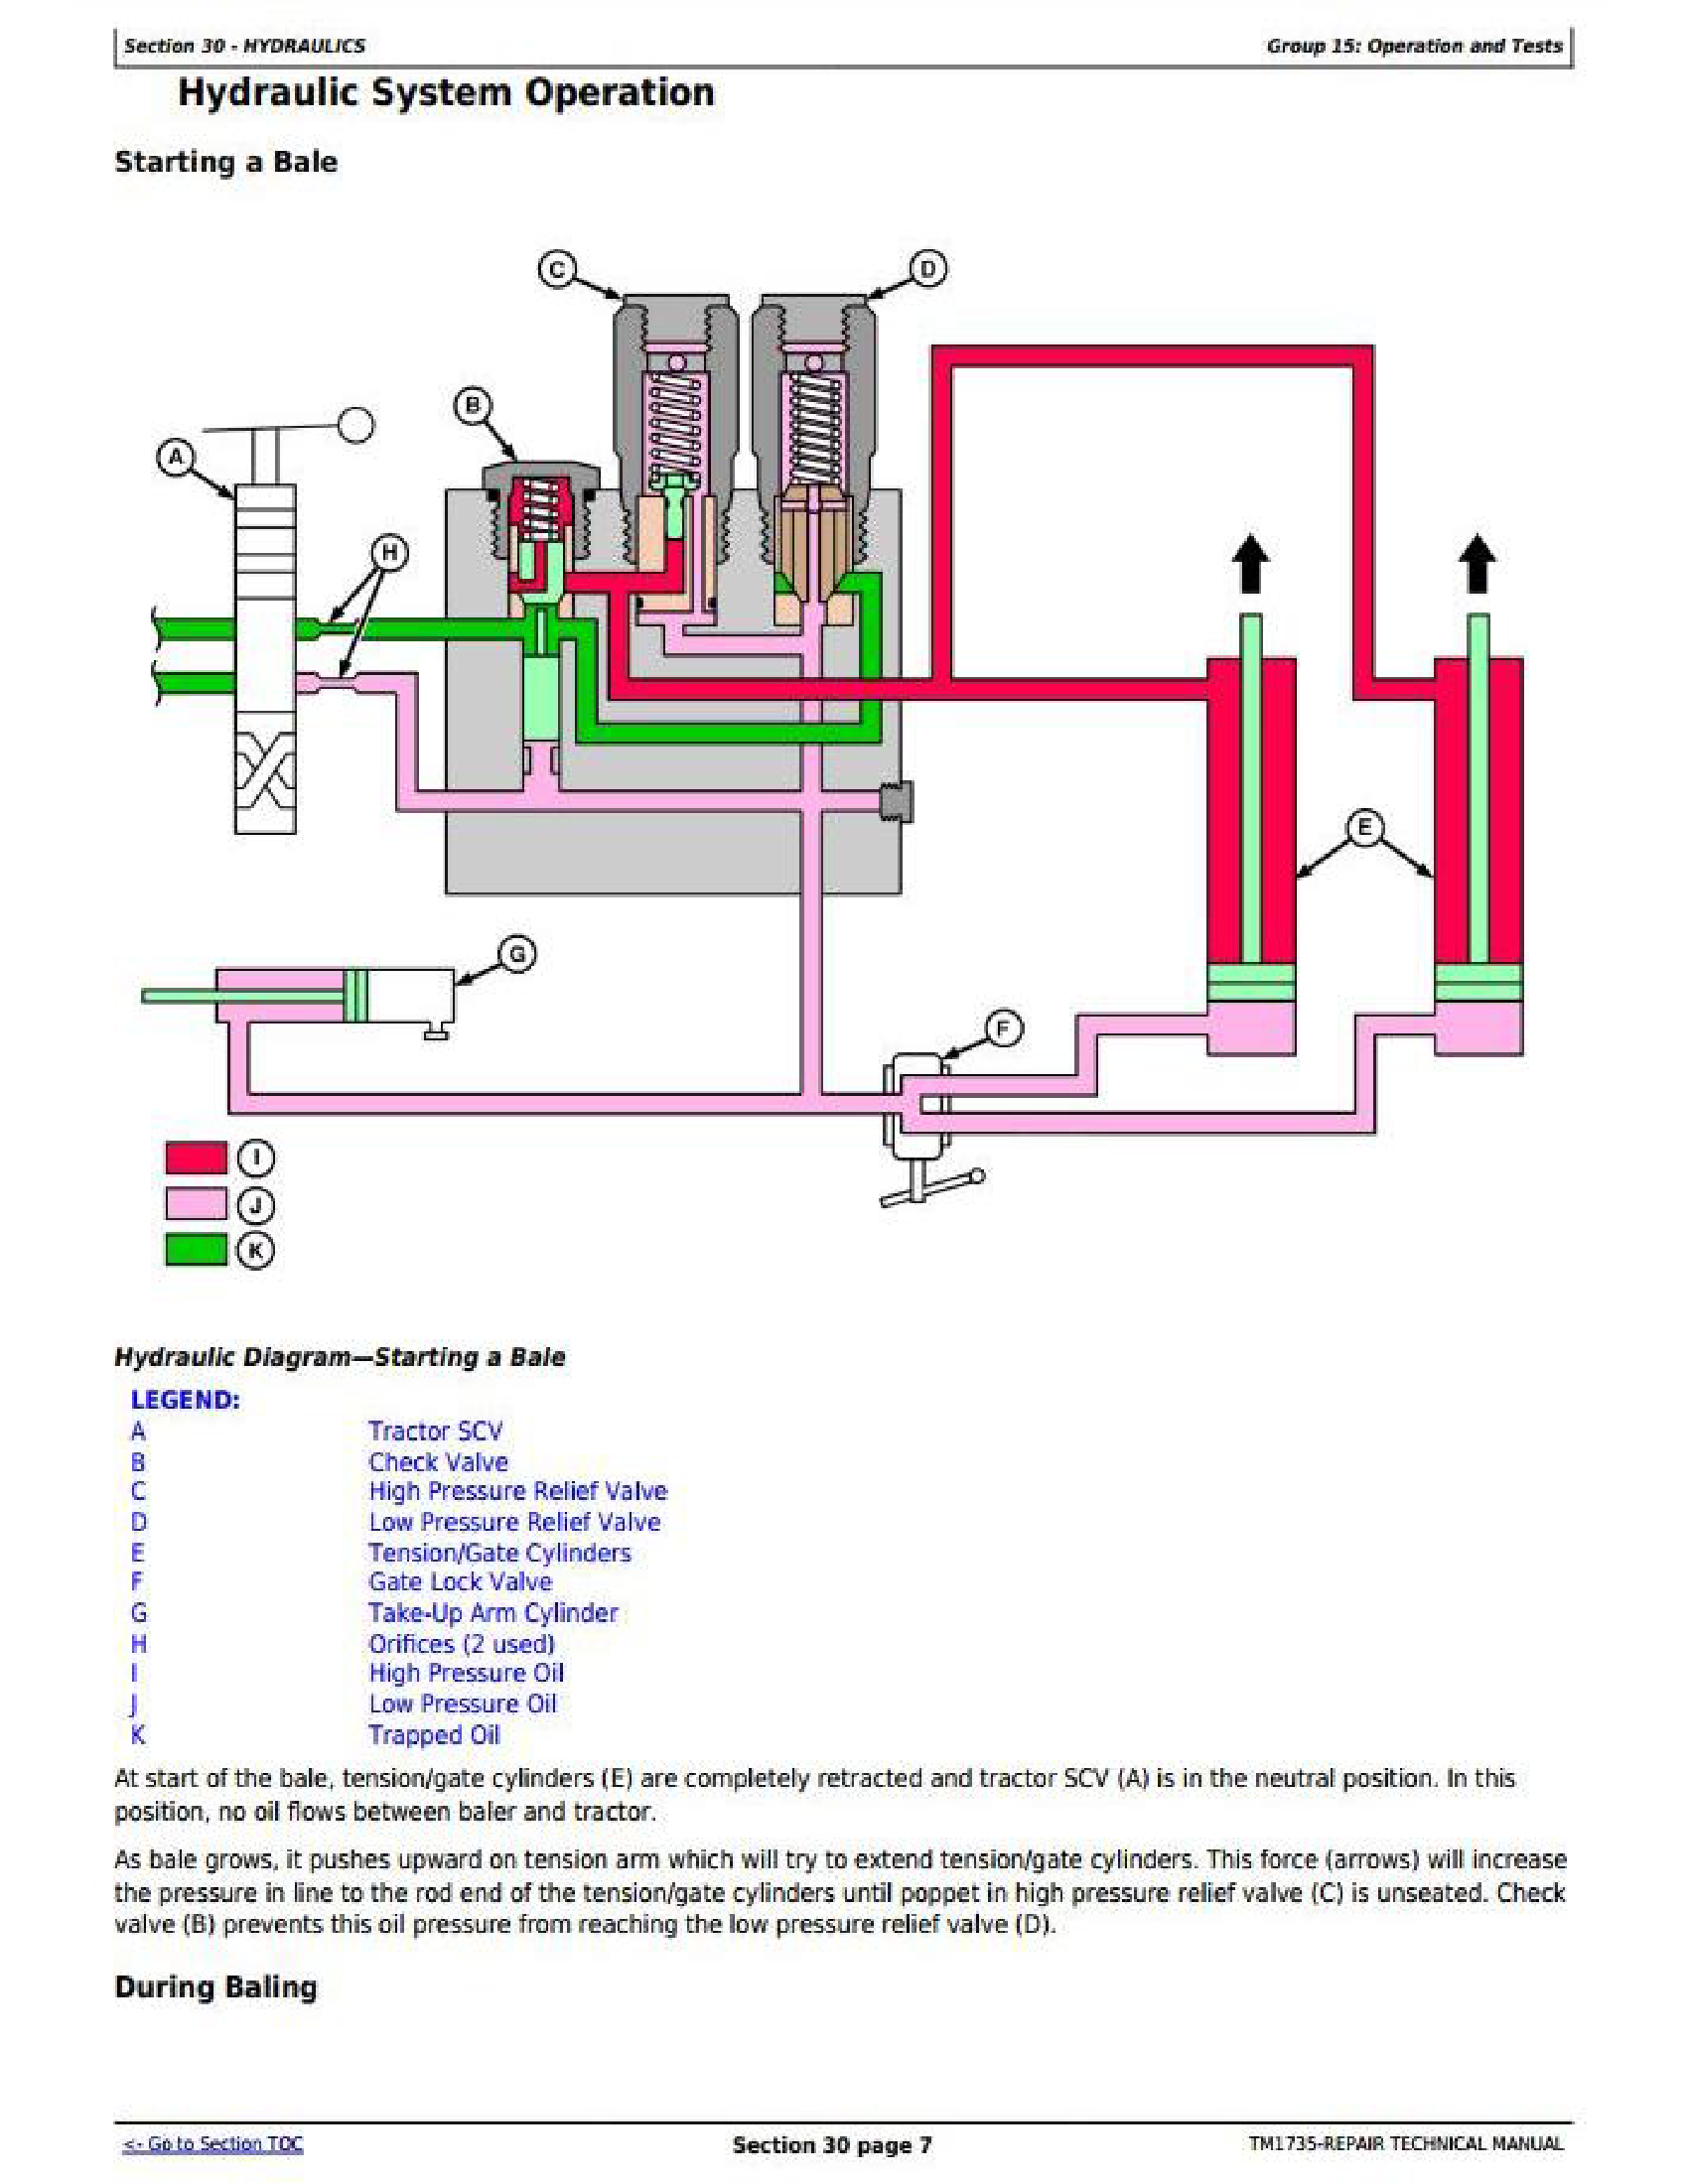 John Deere R40-STC manual pdf